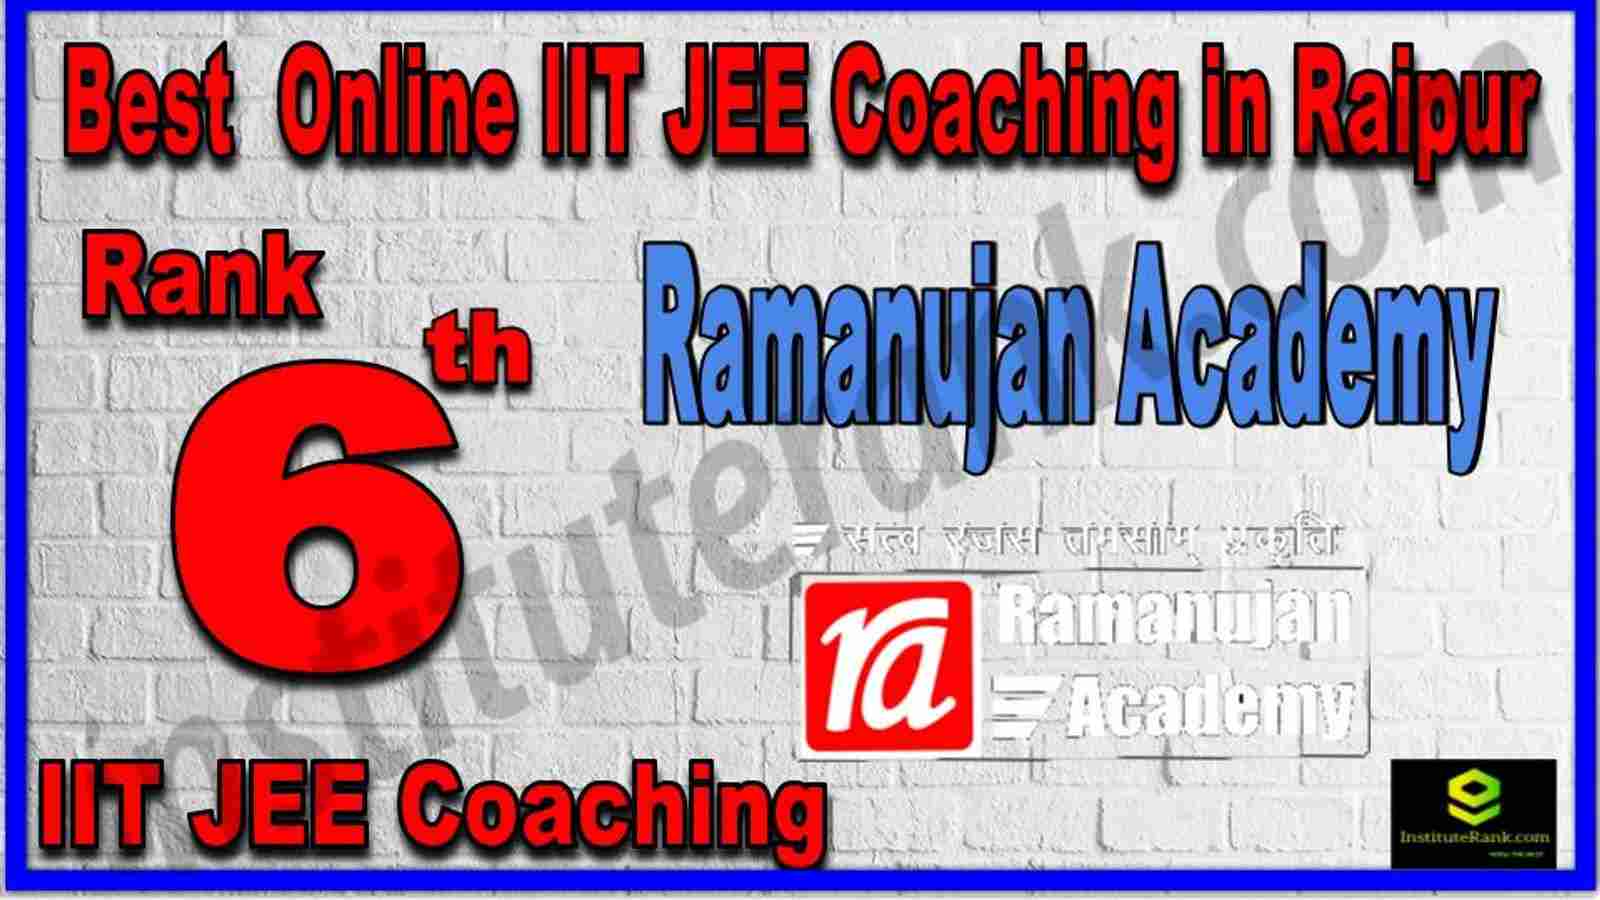 Rank 6th Best Online IIT JEE Coaching in Raipur